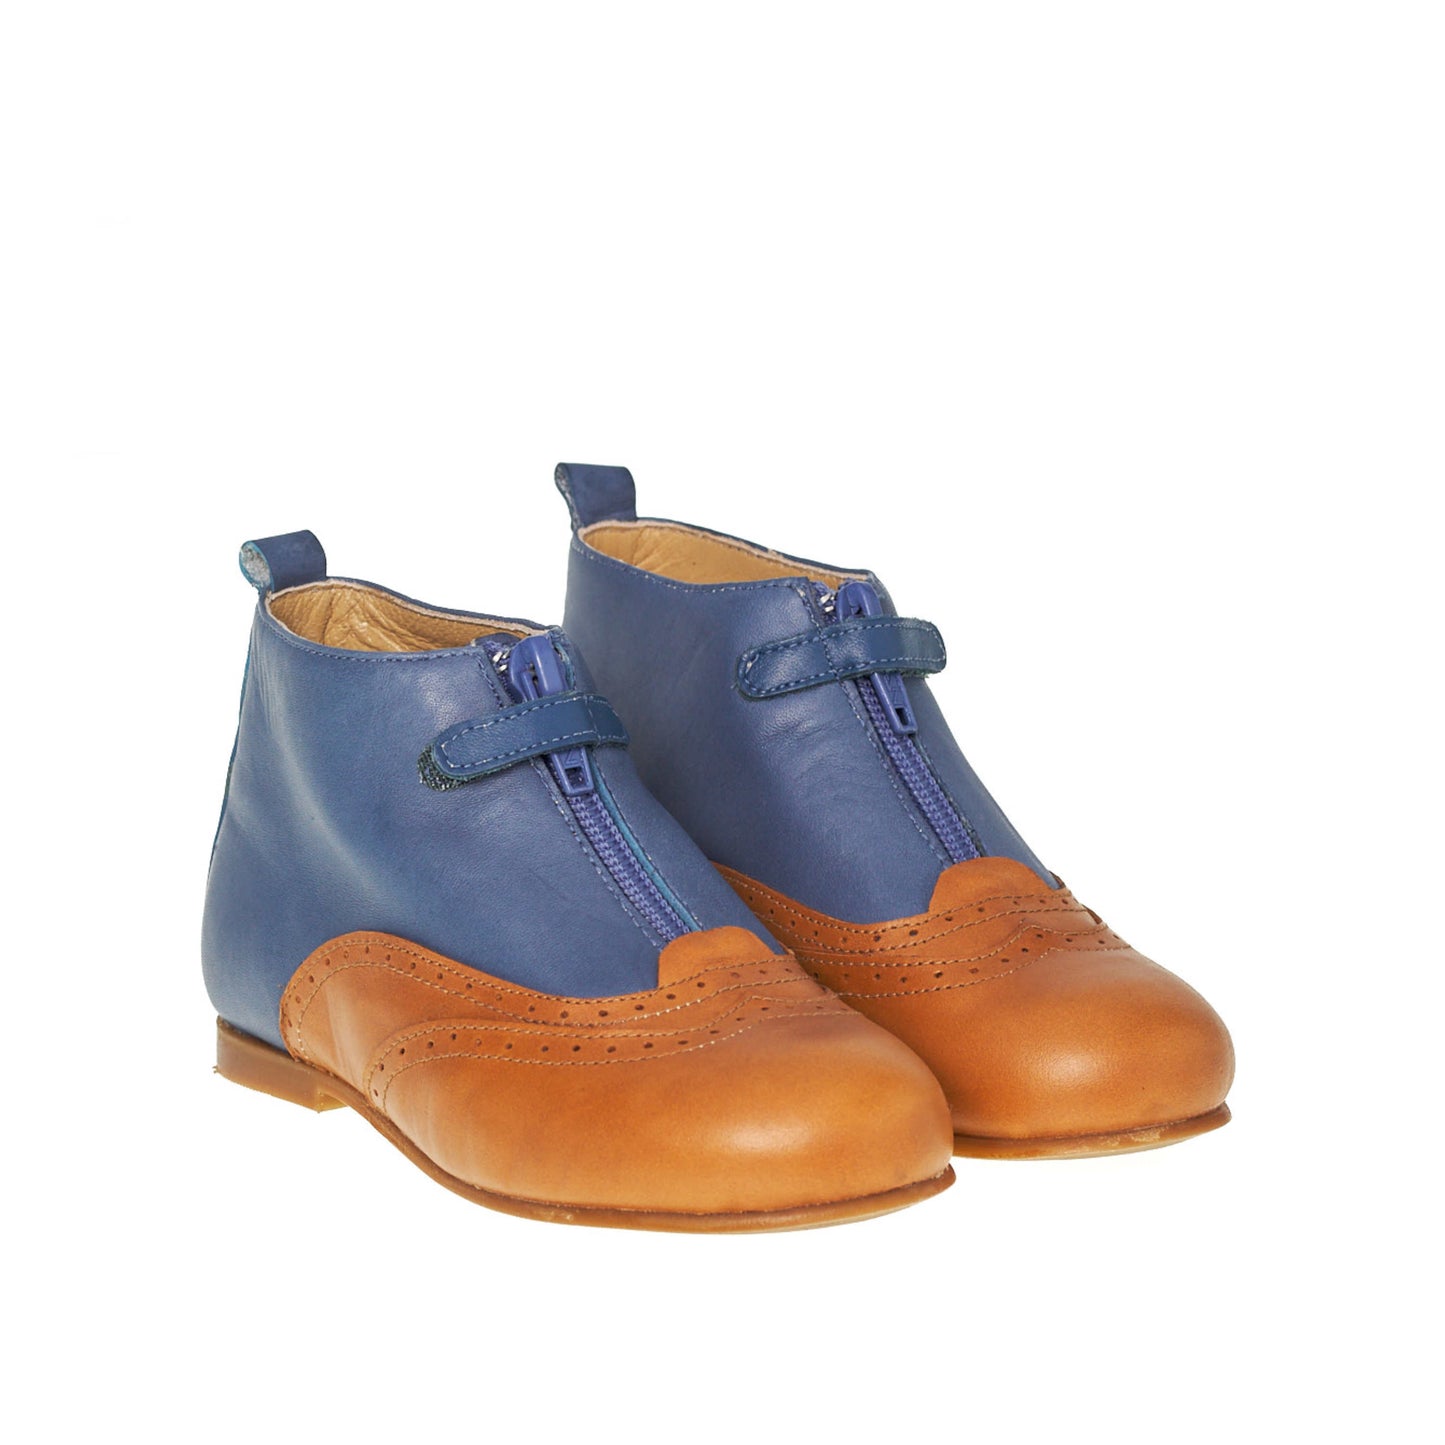 LMDI Collection Moda Boot Blue Leather - enkellaarsjes in een combinatie van blauw en cognac leder